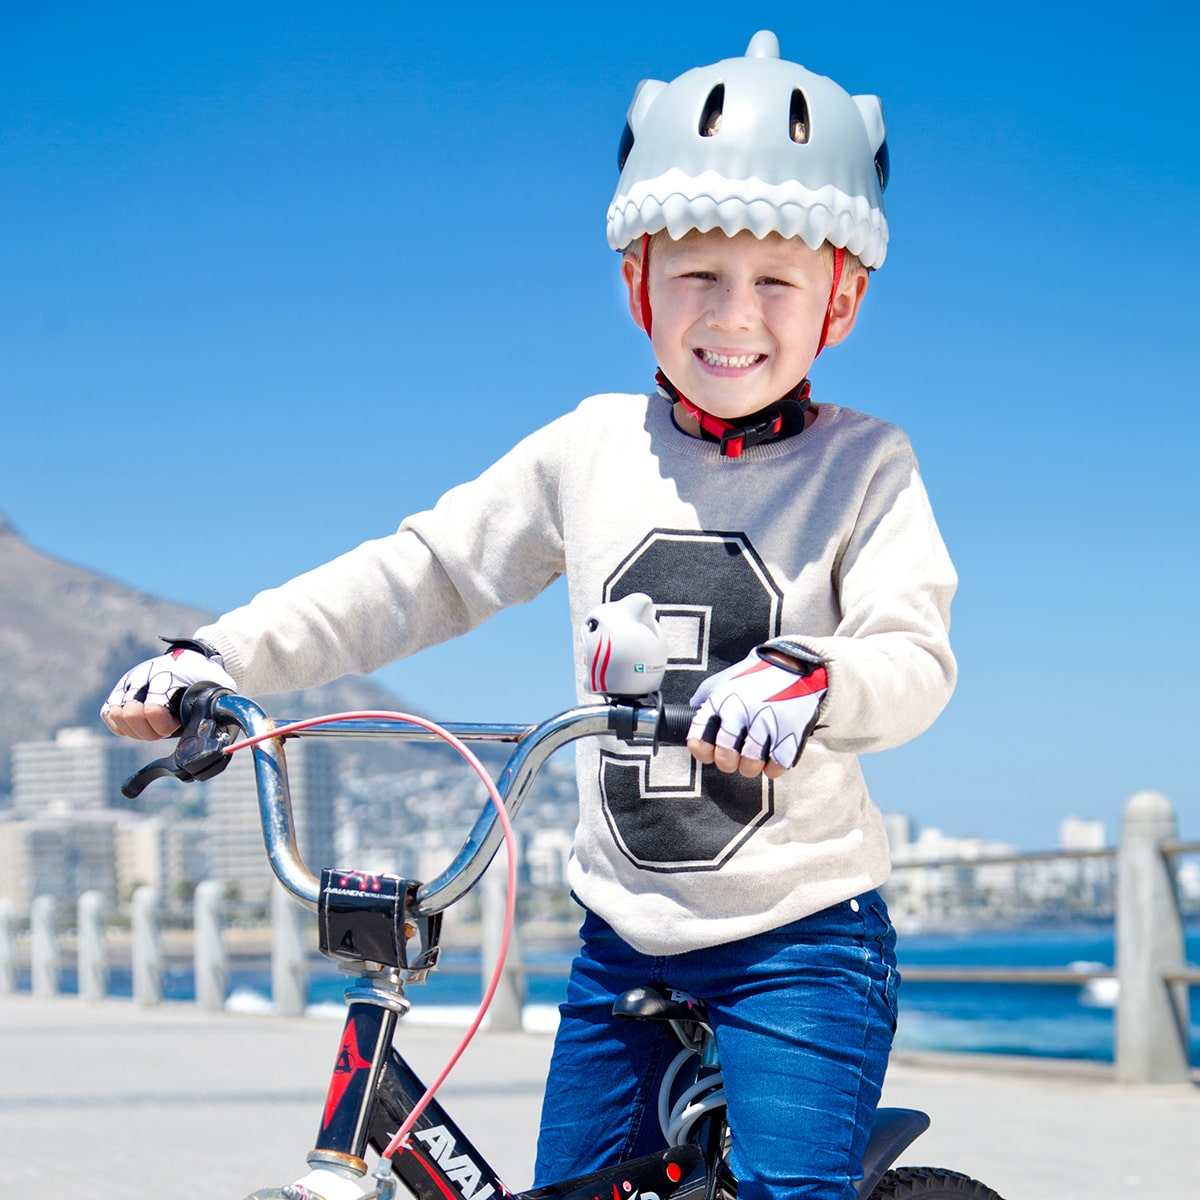 Capacete Bicicleta Para Crianças|tubarão Cinza| Crazy Safety  En1078 Certificado - Dê aos seus filhos uma vantagem com um capacete memorável. Serve para 2-7 anos (S - 49-55 cm) & 6-12 anos (M - 54-59 cm). Luz LED vermelha. Testado e certificado. | Sport Zone MKP